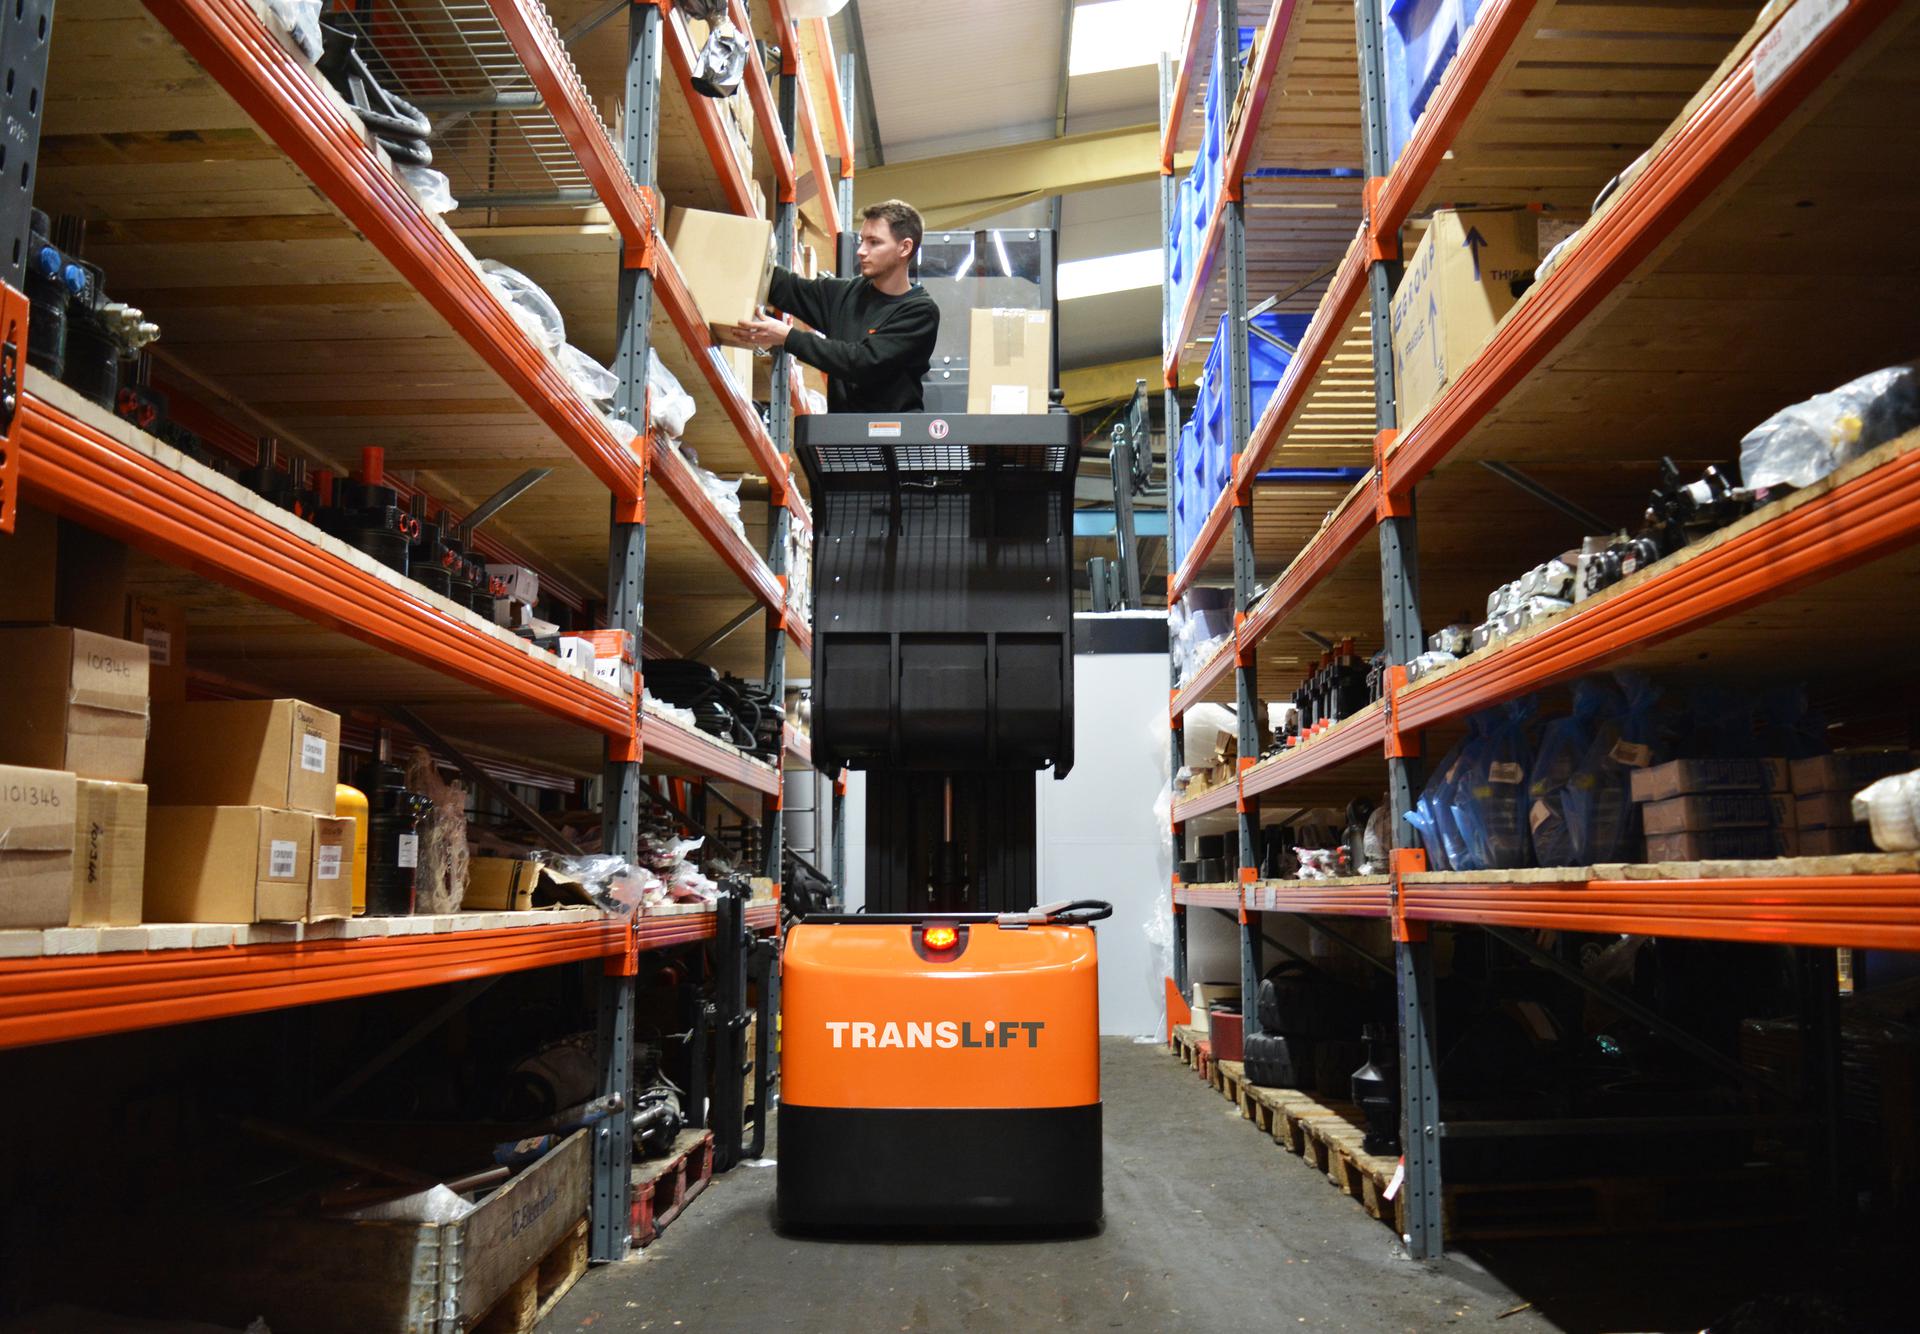 Translift JX1 order picker. Warehouse equipment from Translift Bendi